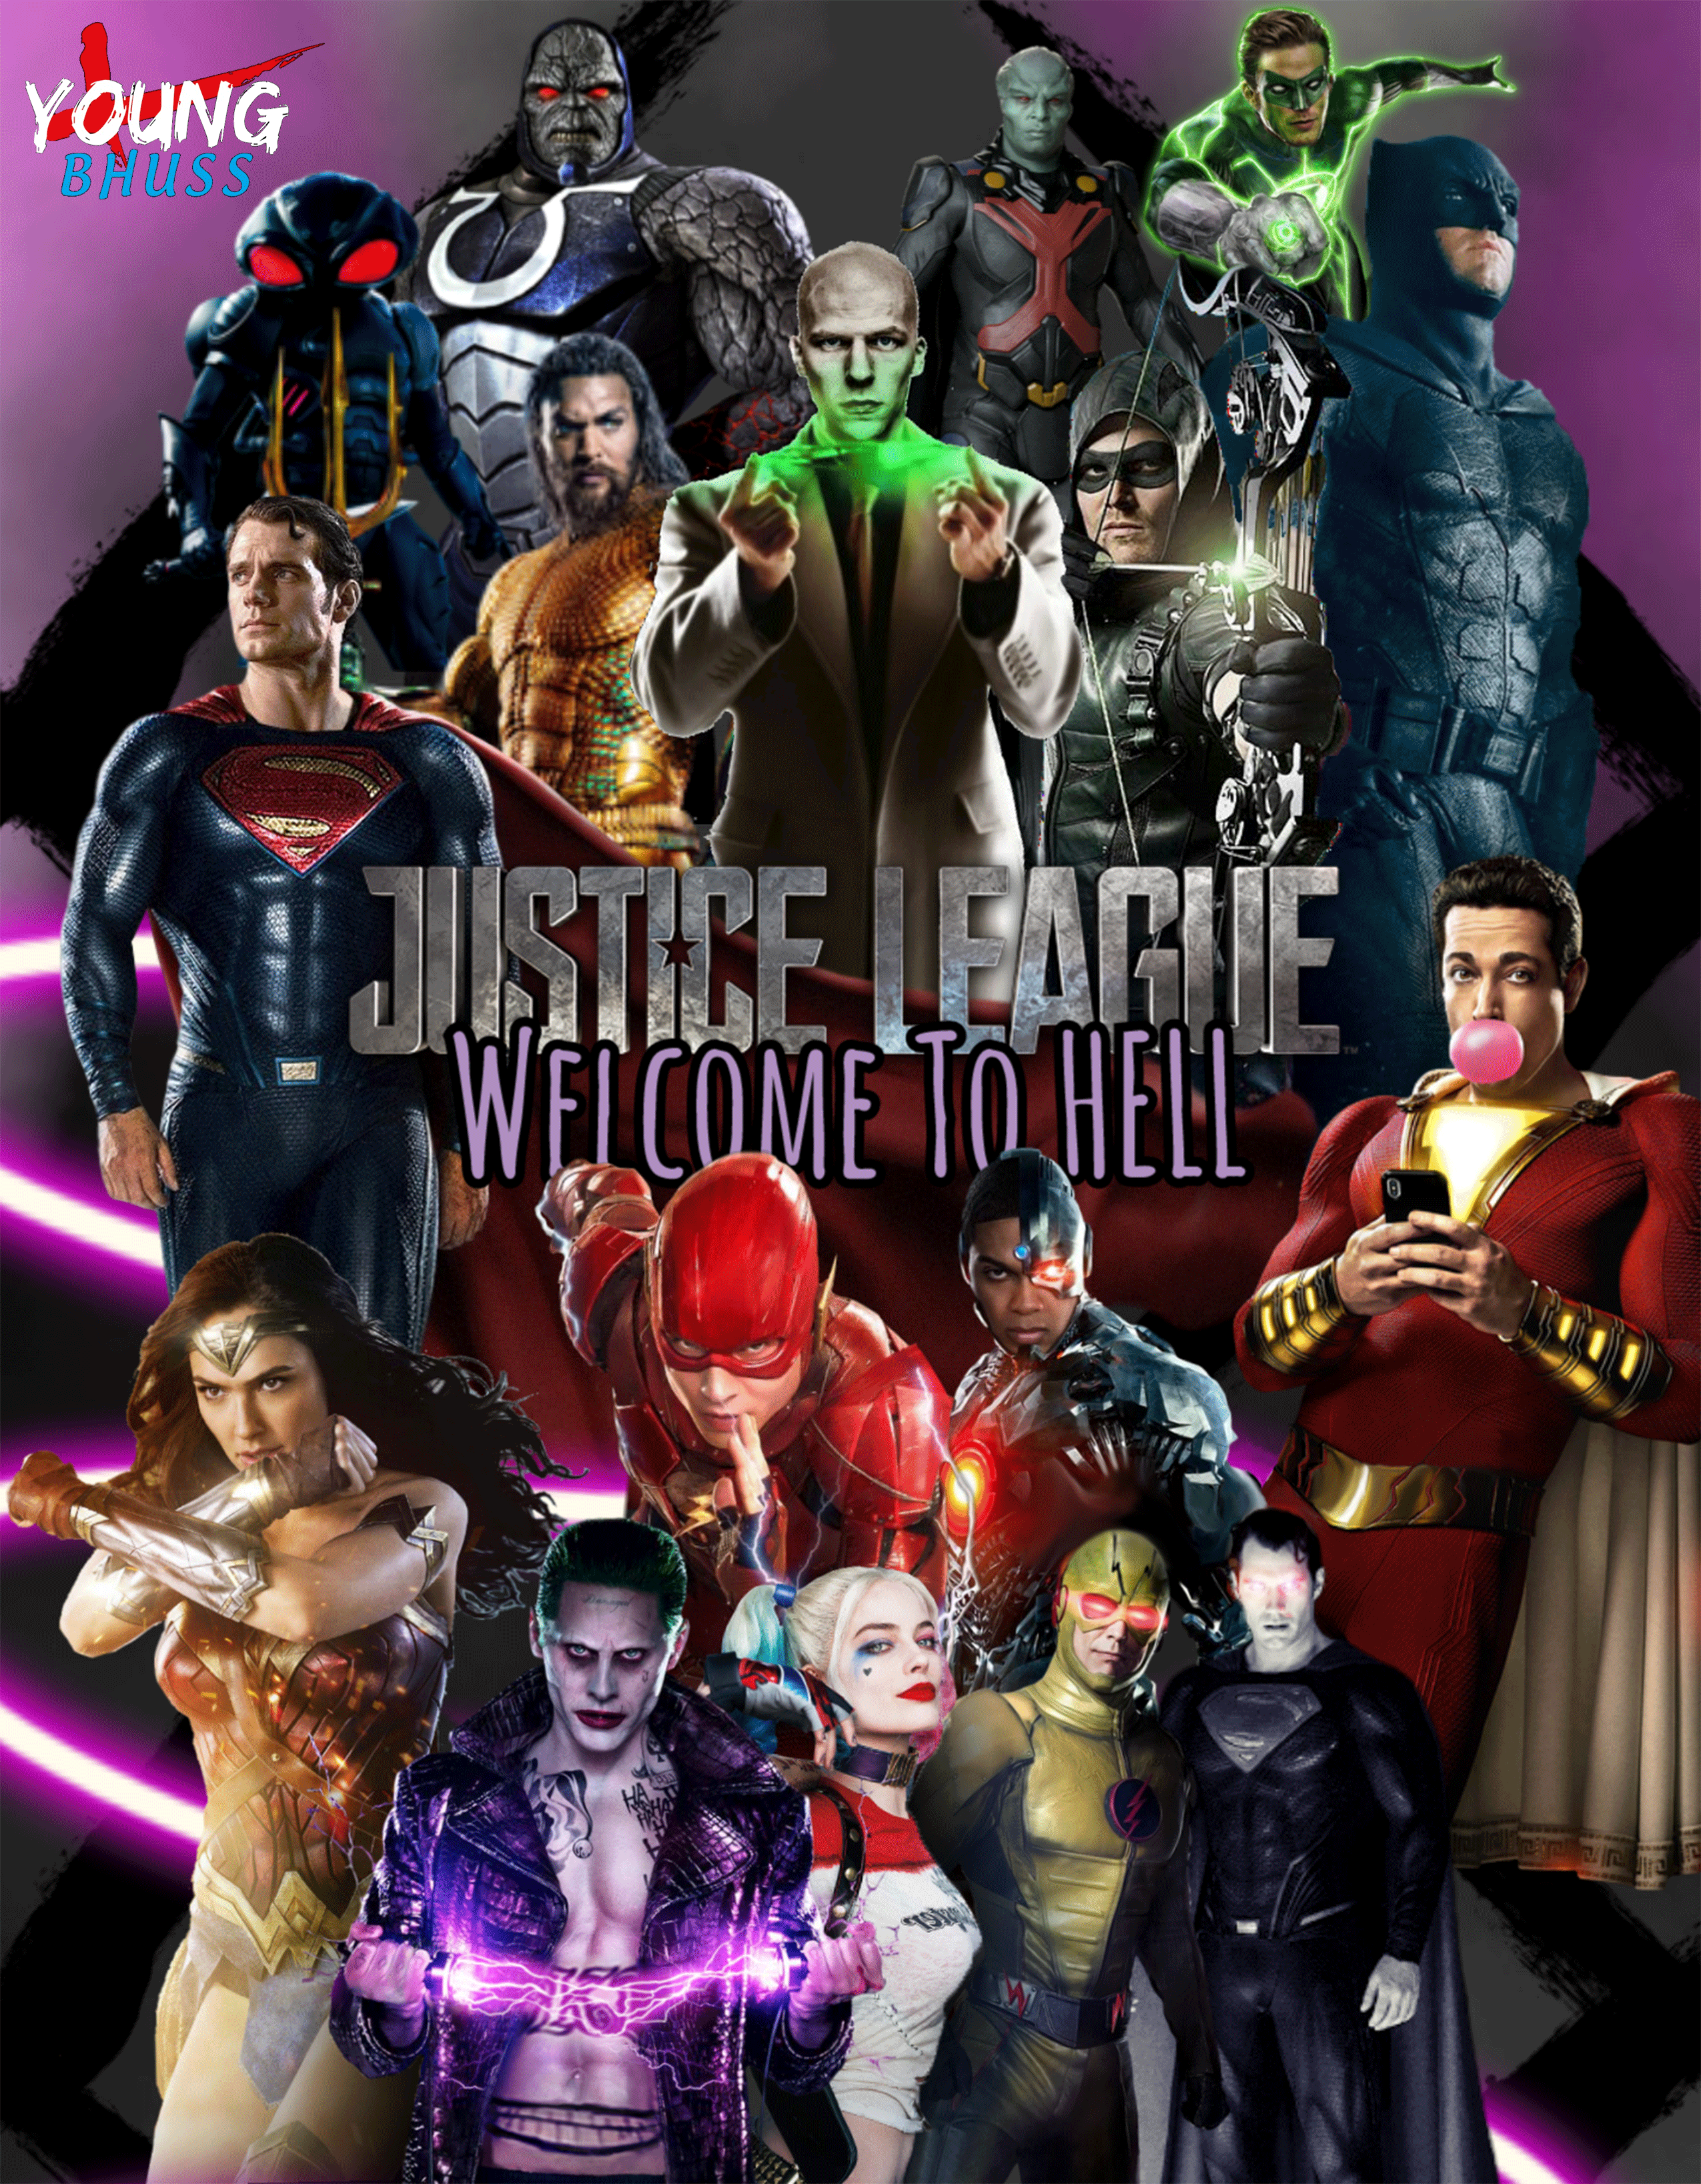 League 2 justice 'Justice League